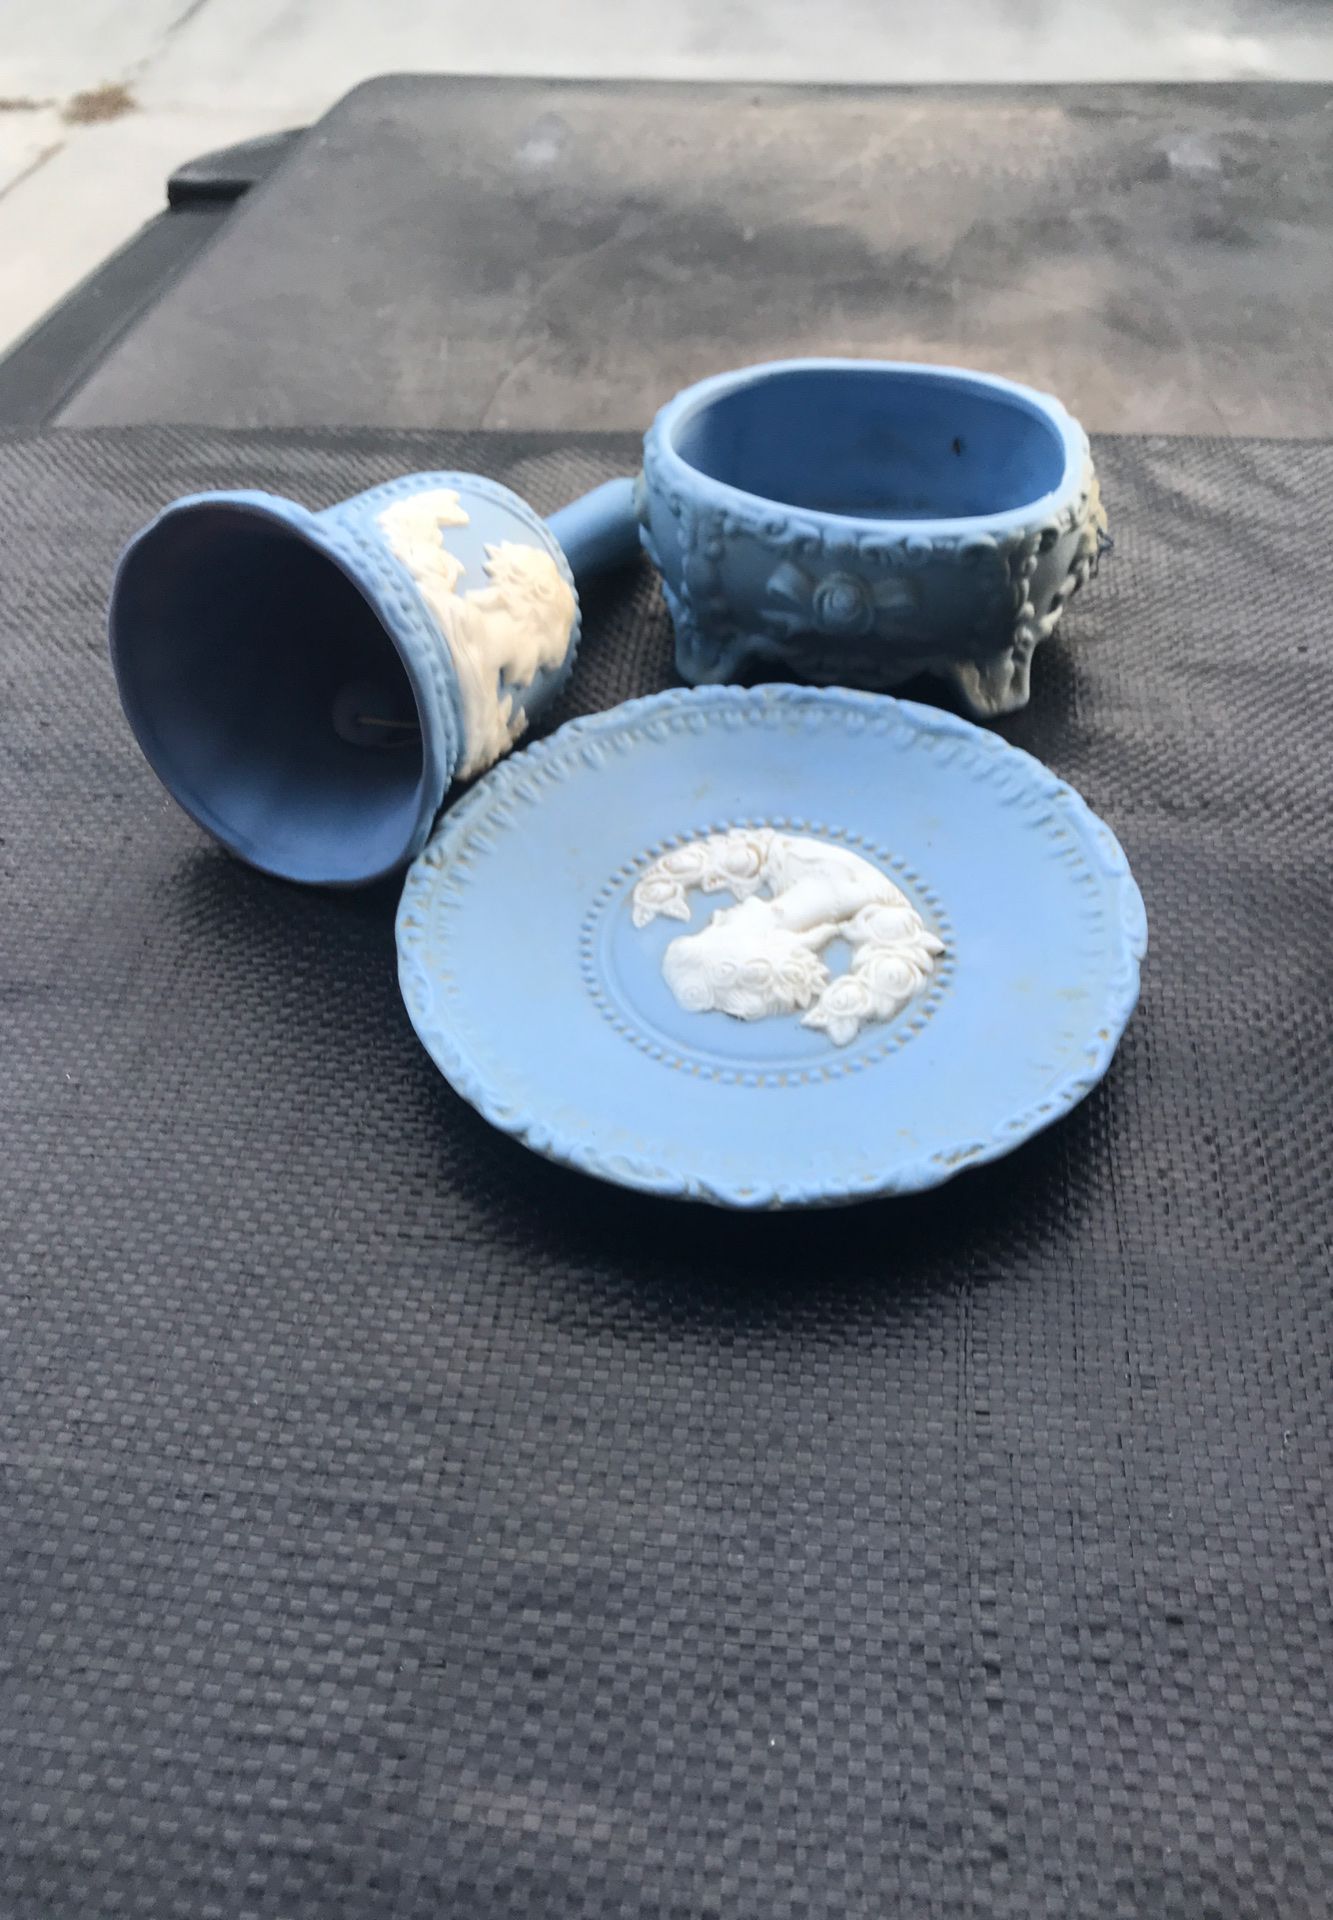 Antiq ceramic set